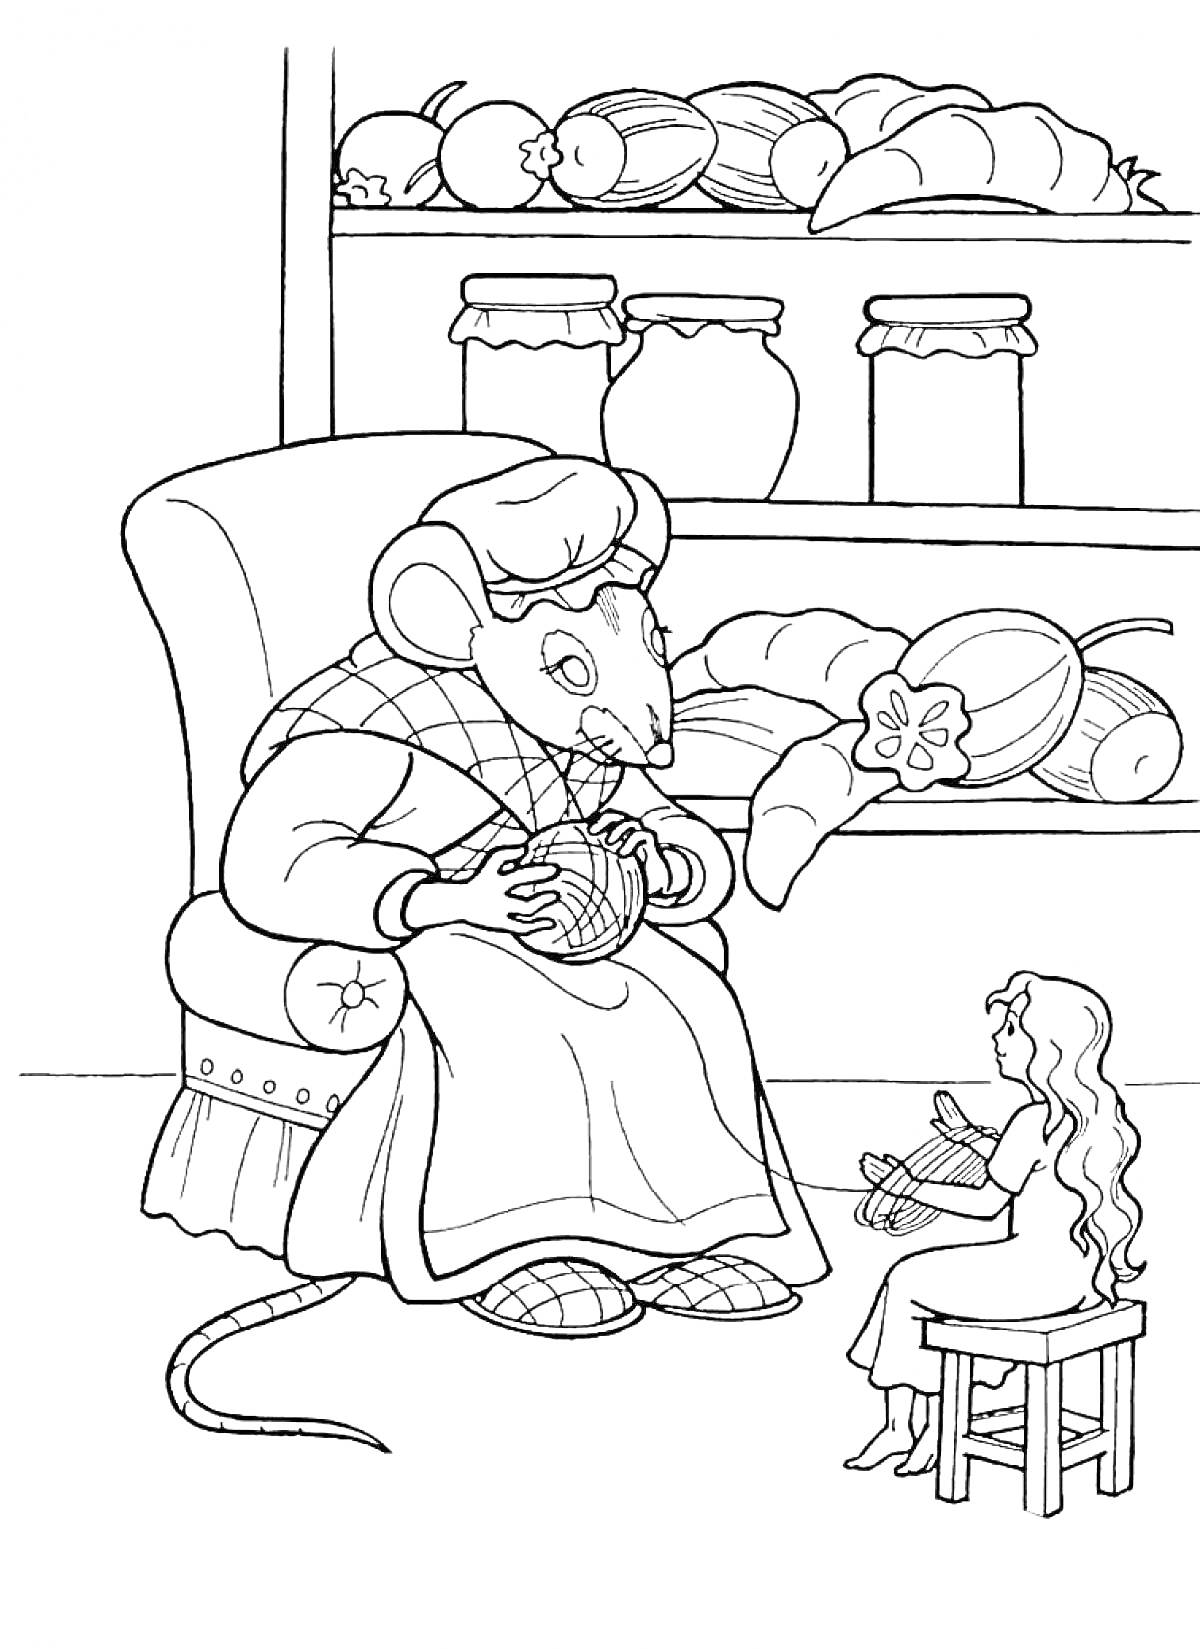 Раскраска Мышь в кресле и Дюймовочка с пряжей на фоне полки с банками и овощами